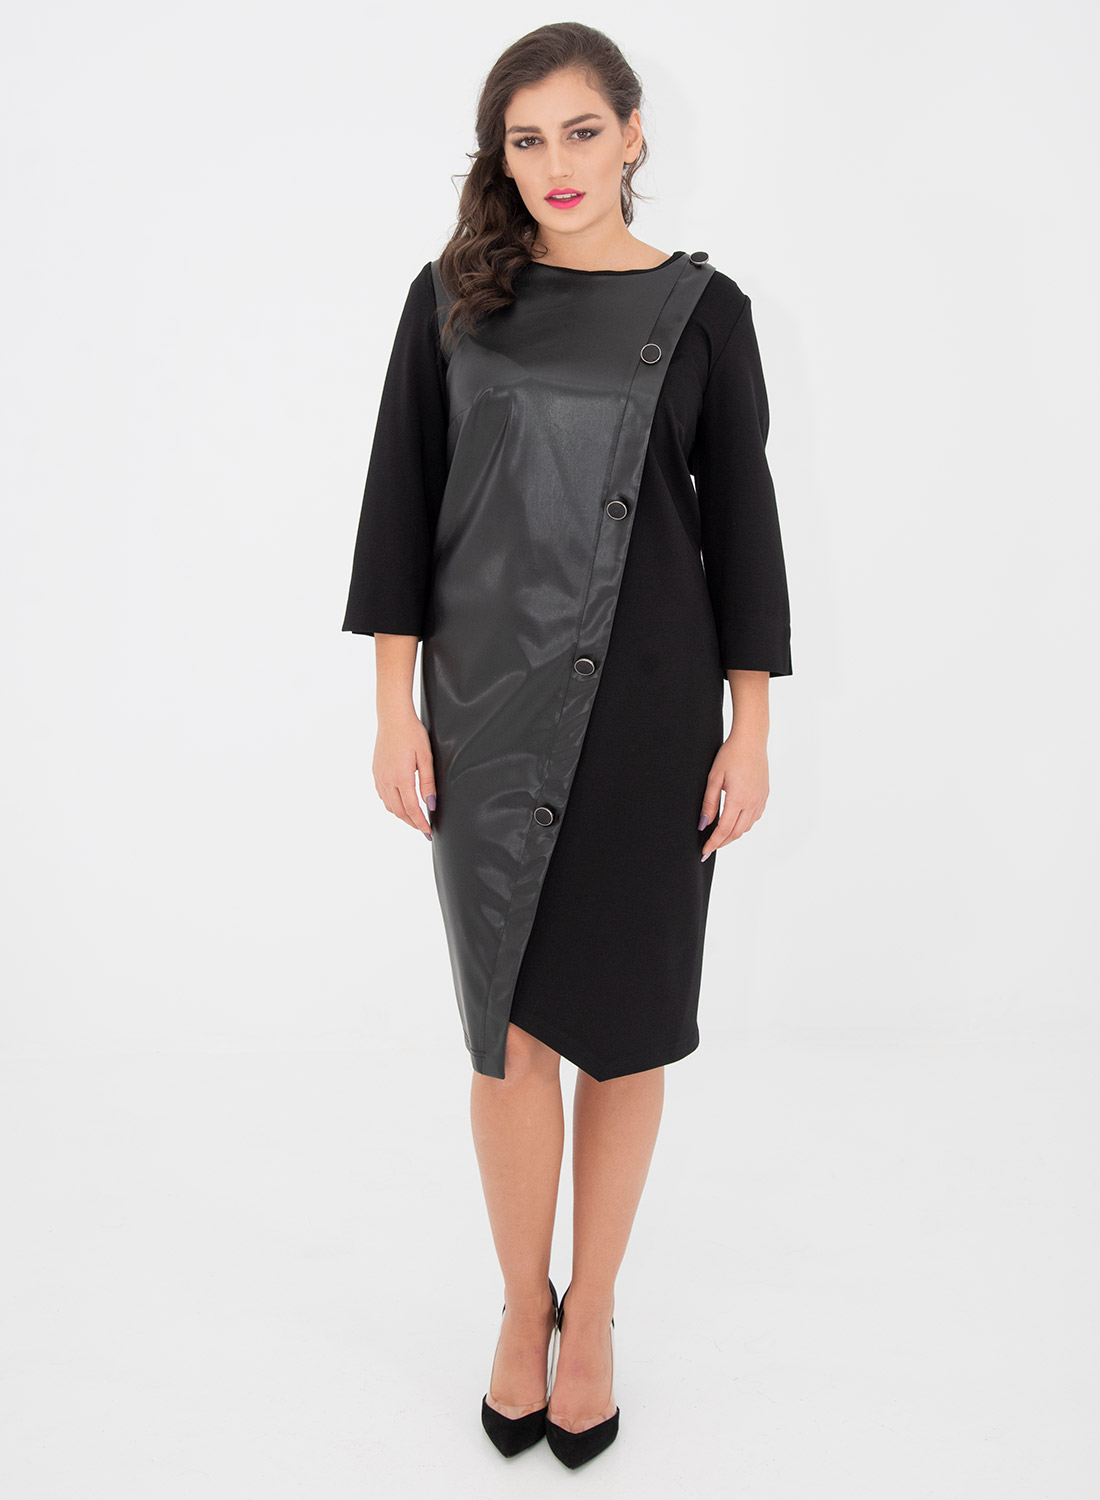 Μαύρο κολακευτικό φόρεμα με δερματίνη 6318